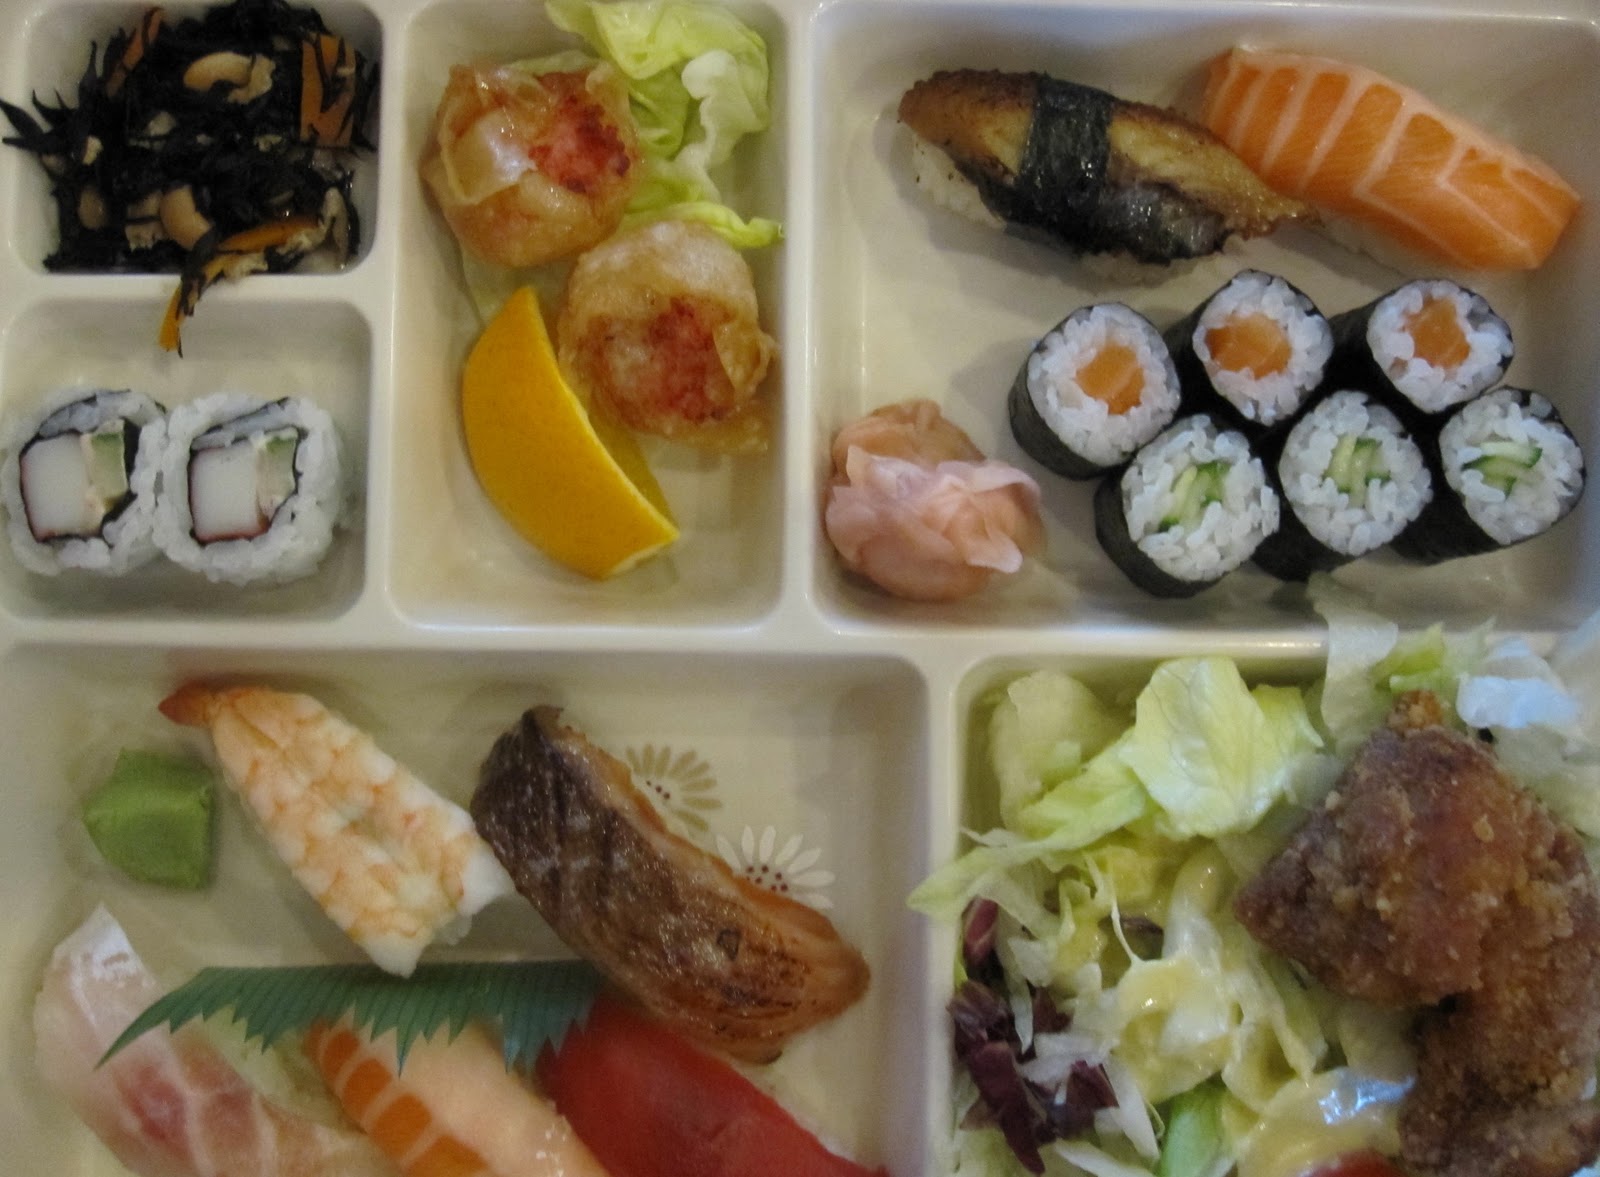 http://1.bp.blogspot.com/-uoJczHZFr1g/TnnEfO2jDFI/AAAAAAAABJI/RACLTzIUXV0/s1600/sushi+bento.jpg